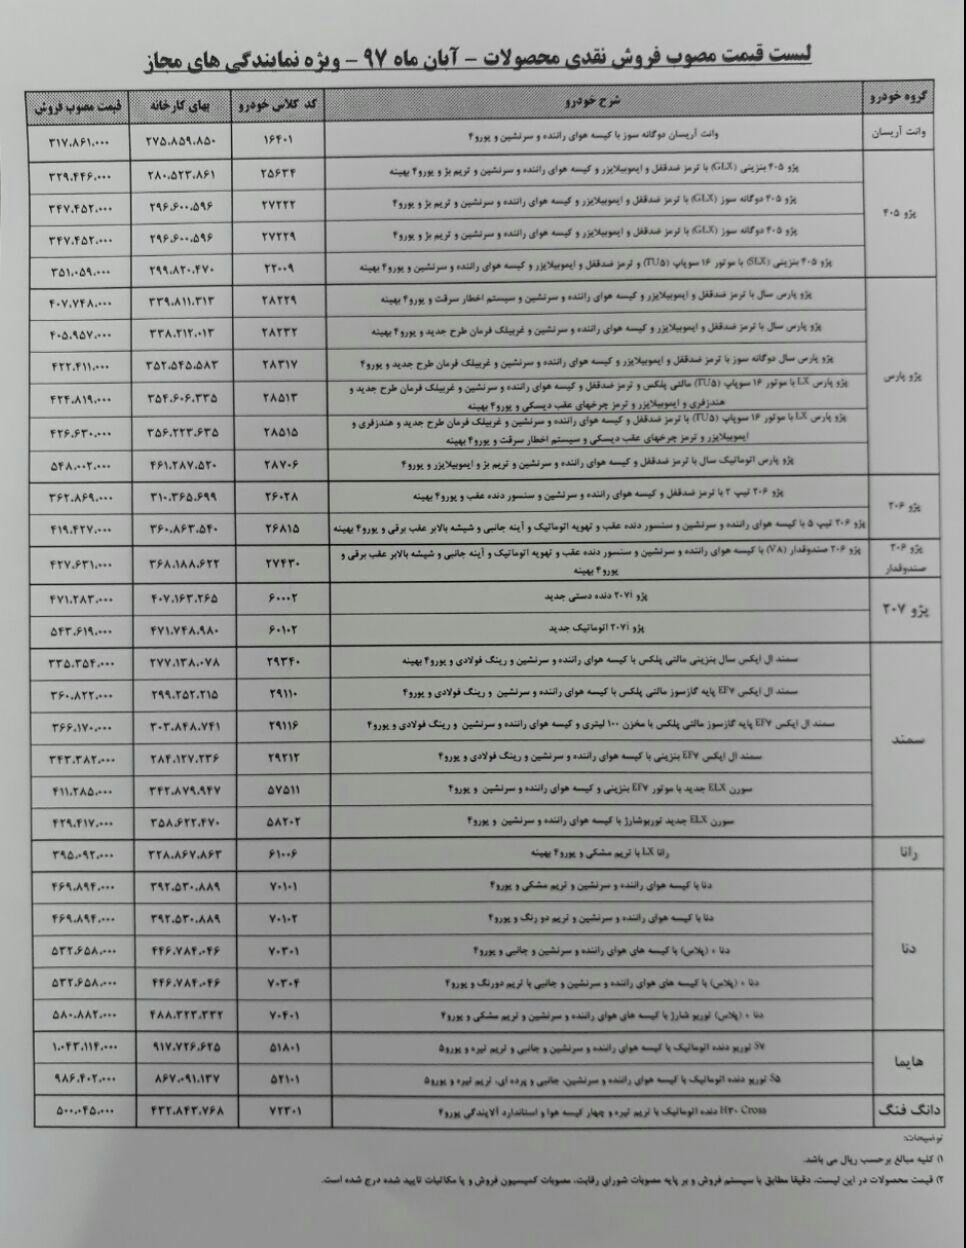  بدون تغییر ماندن لیست قیمت کارخانه ای محصولات ایران خودرو در آبان 97 